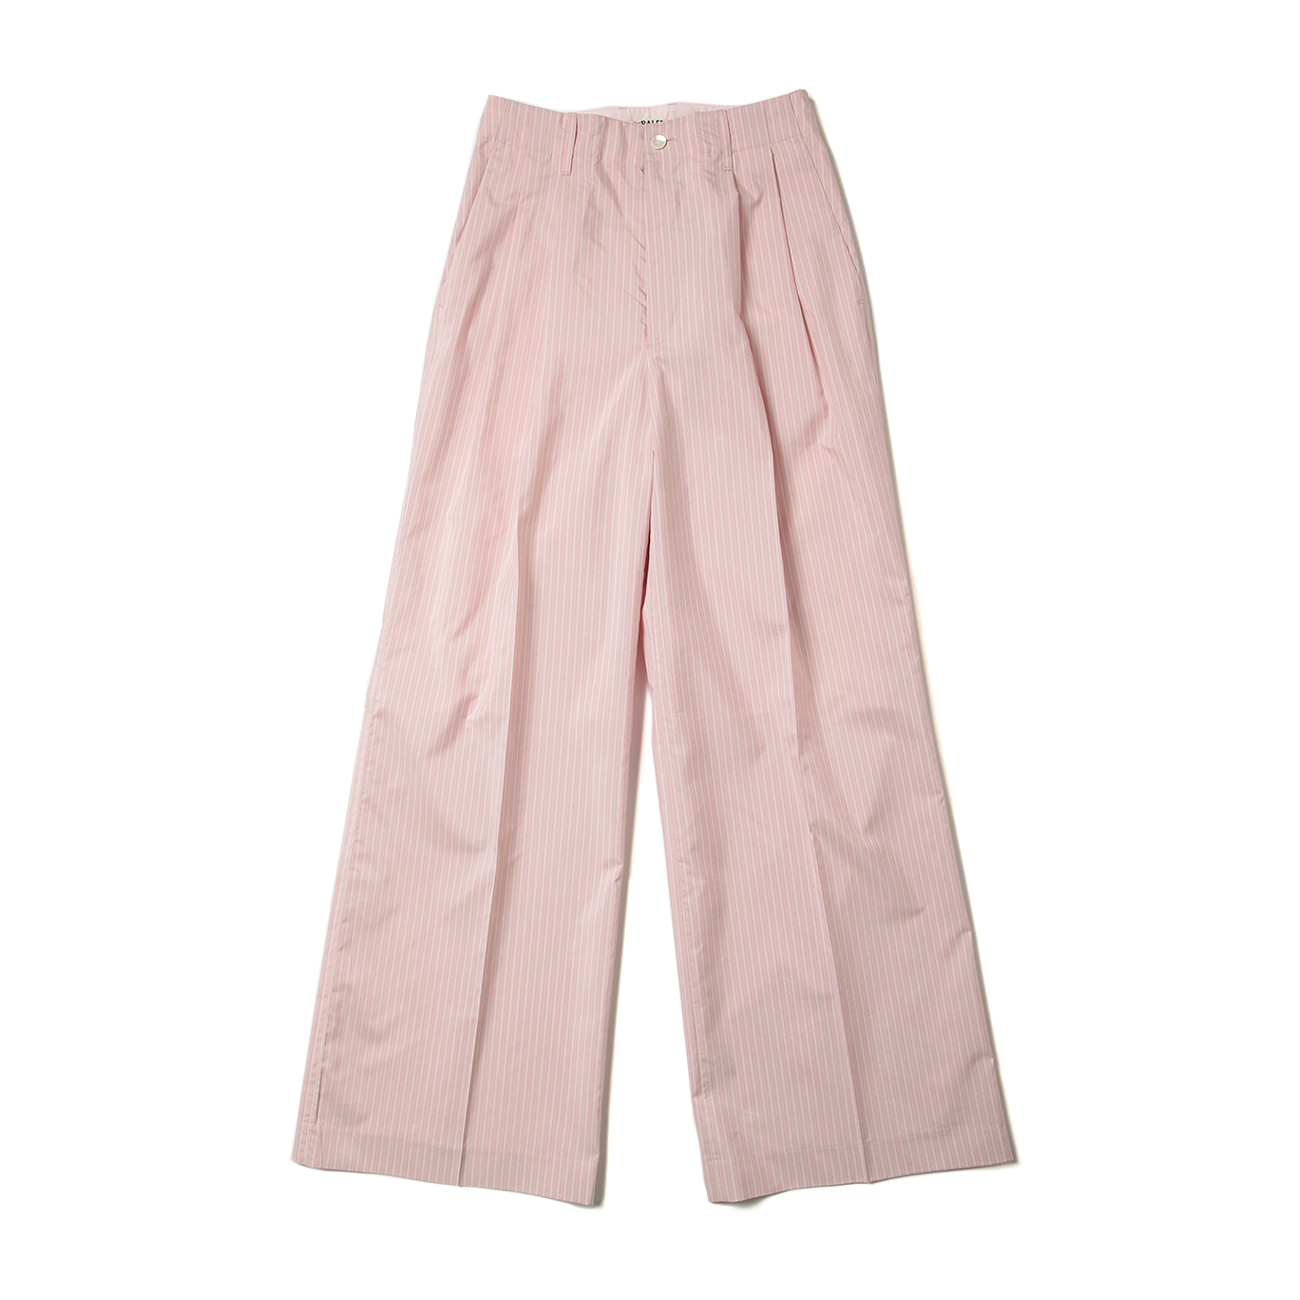 FINX POLYESTER STRIPE PANTS (レディース) - Pink Beige Stripe